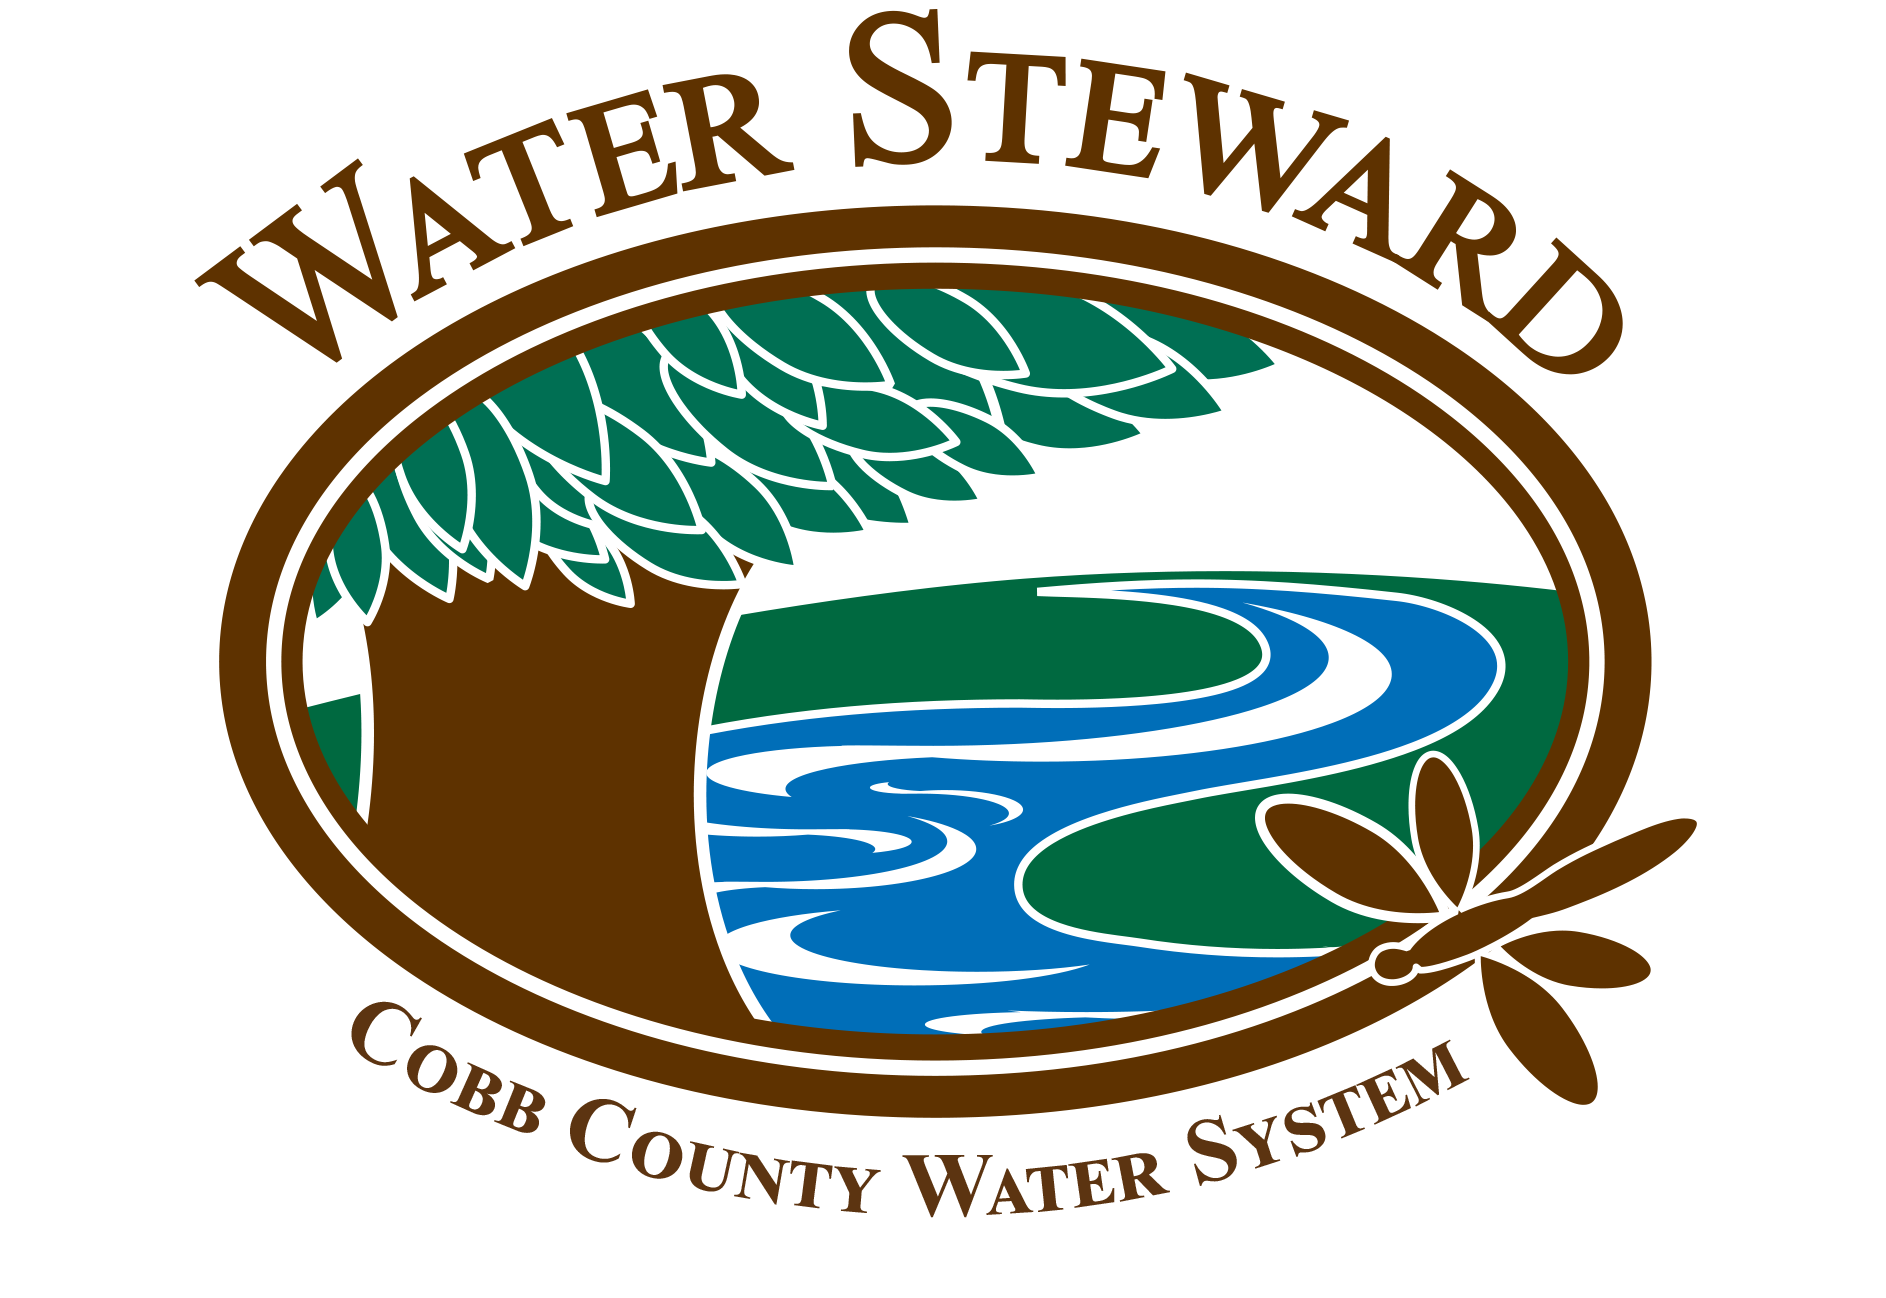 Watershed Stewardship Program